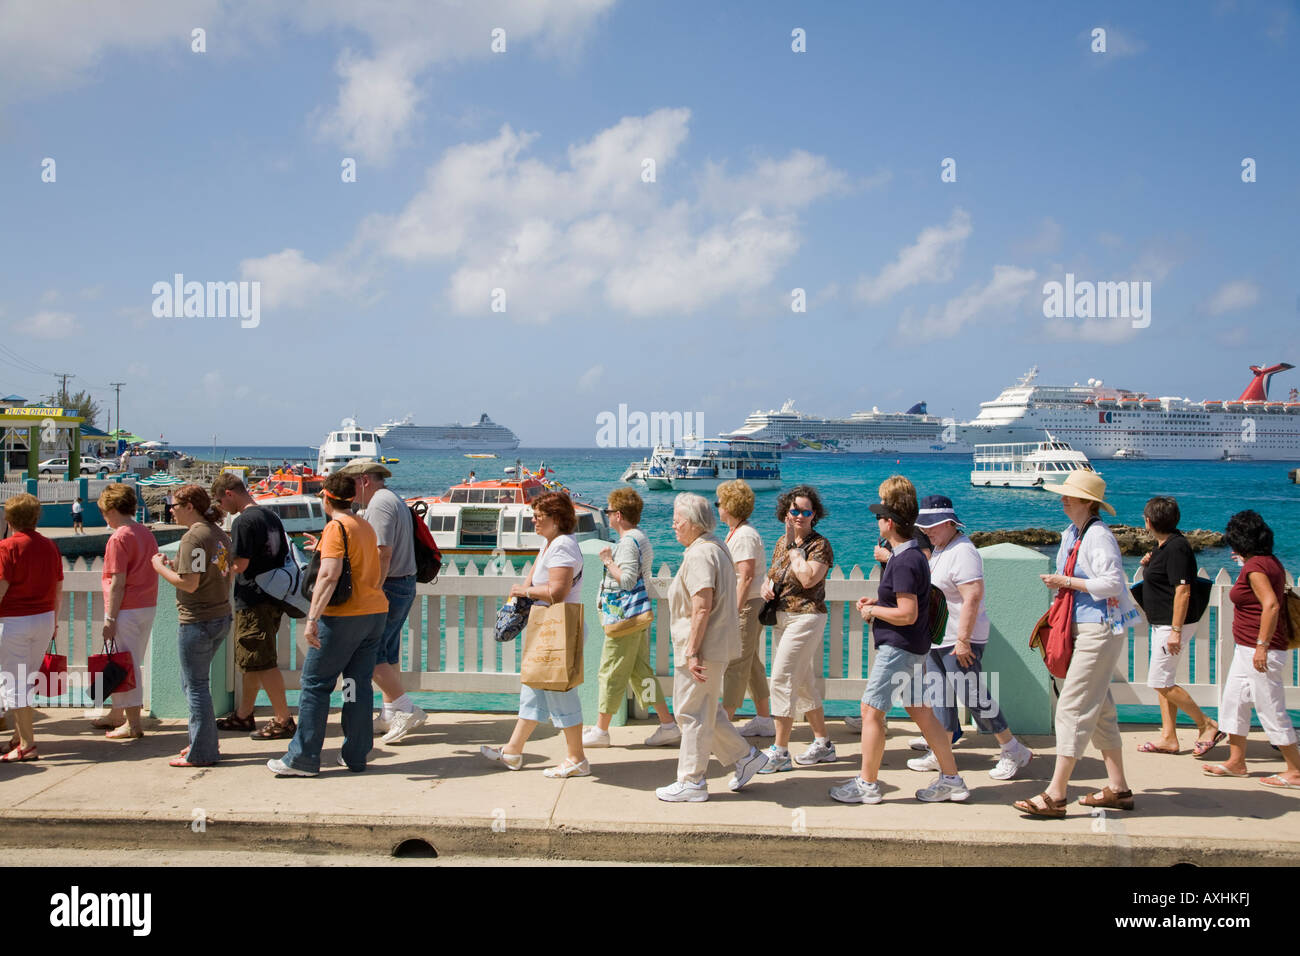 La nave di crociera i passeggeri a piedi in Georgetown waterfront con navi da crociera off Georgetown sull'isola di Grand Cayman in Cayman Islnads Foto Stock